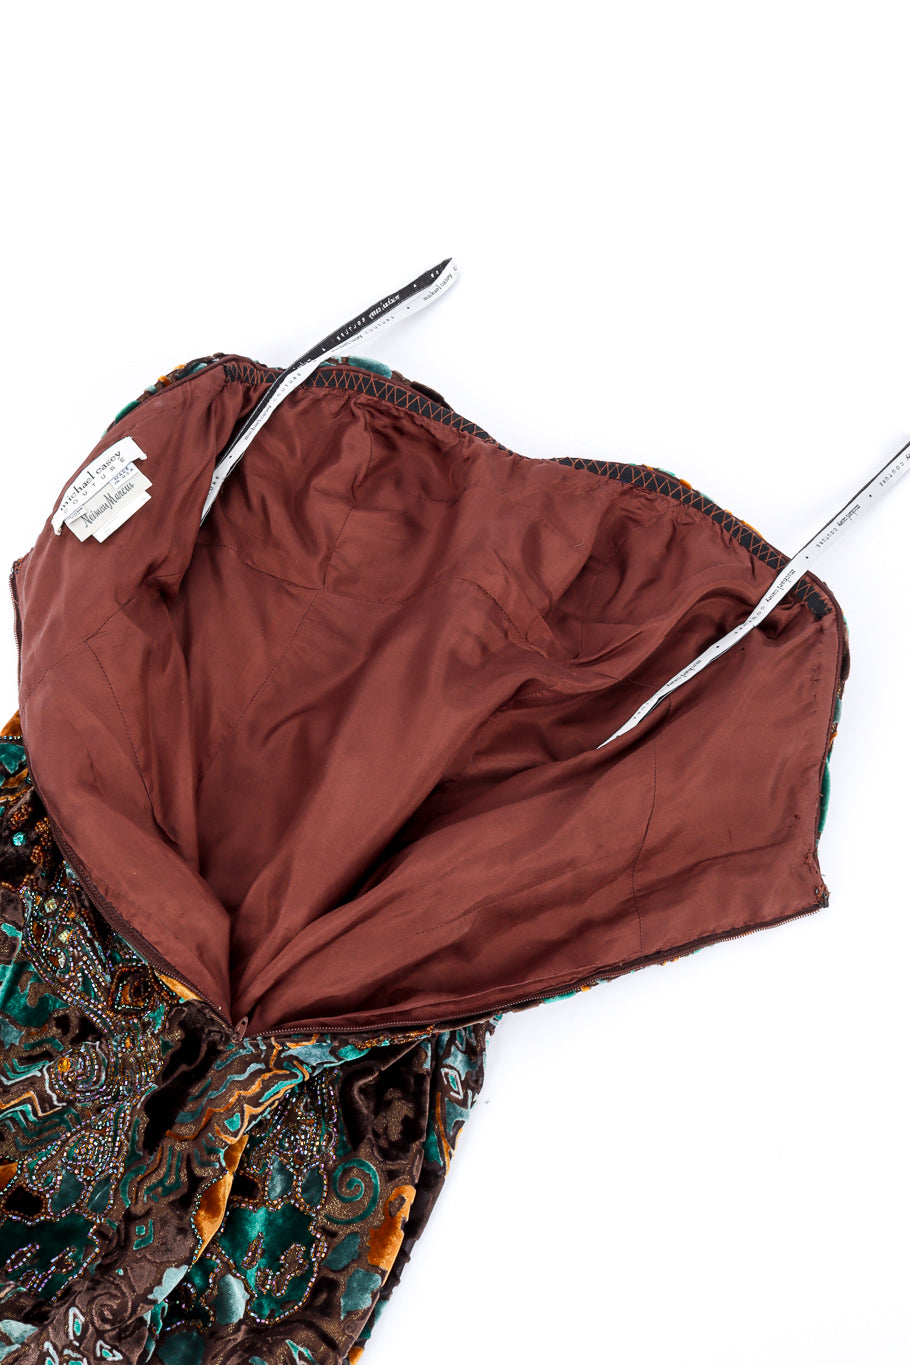 Vintage Michael Casey Strapless Velvet Burnout Gown back unzipped @recessla